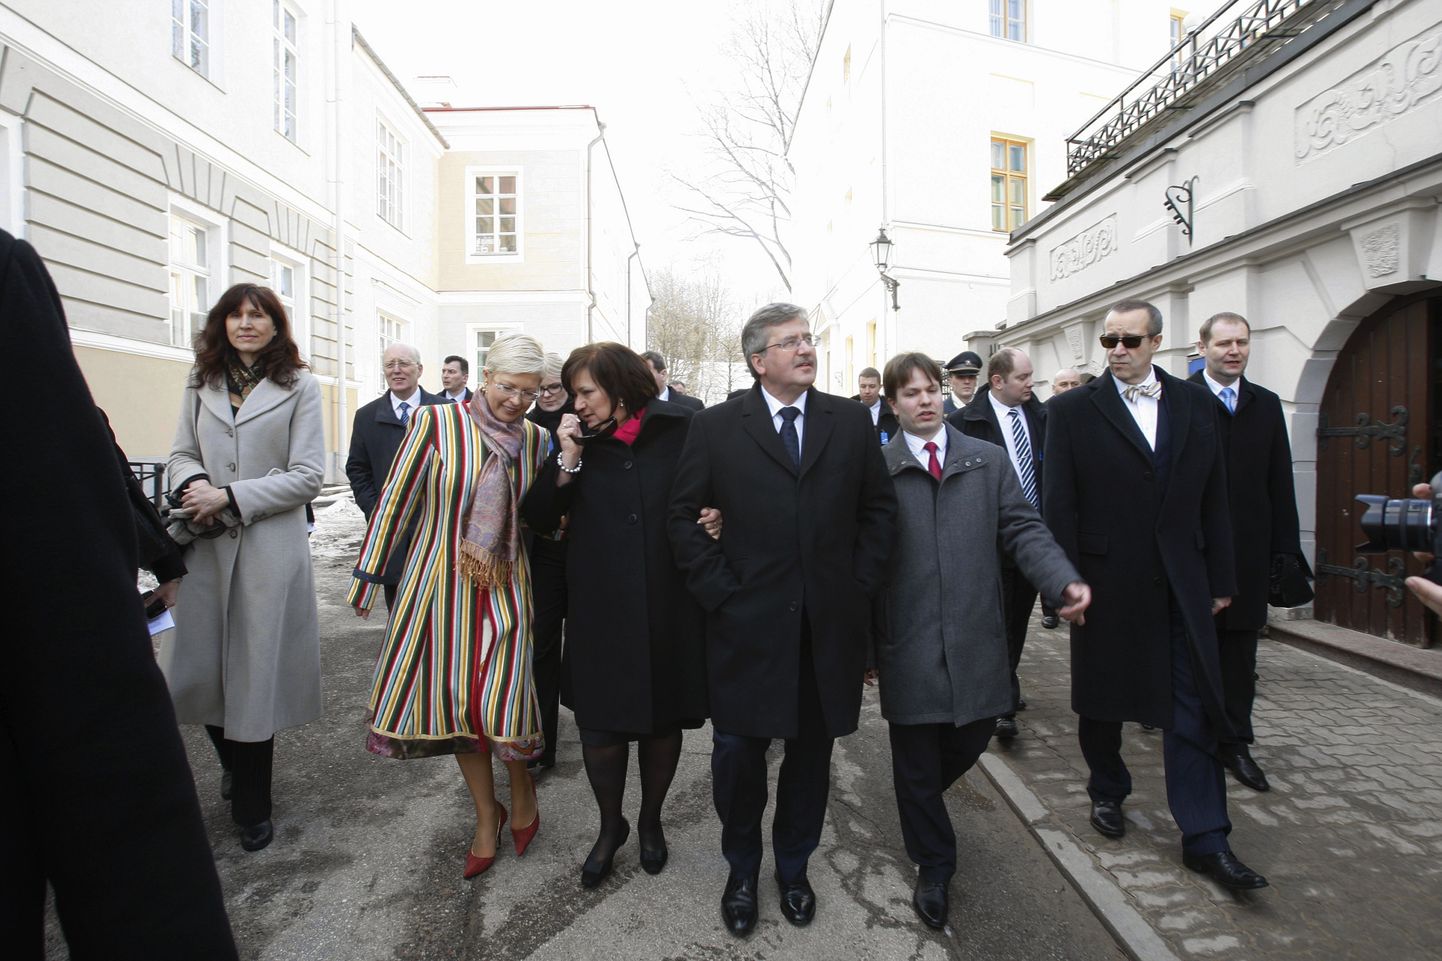 Täna külastas Tartut oma kahepäevase Eesti visiidi raames Poola president Bronislaw Komorowski koos abikaasaga. Ringkäik linnas.